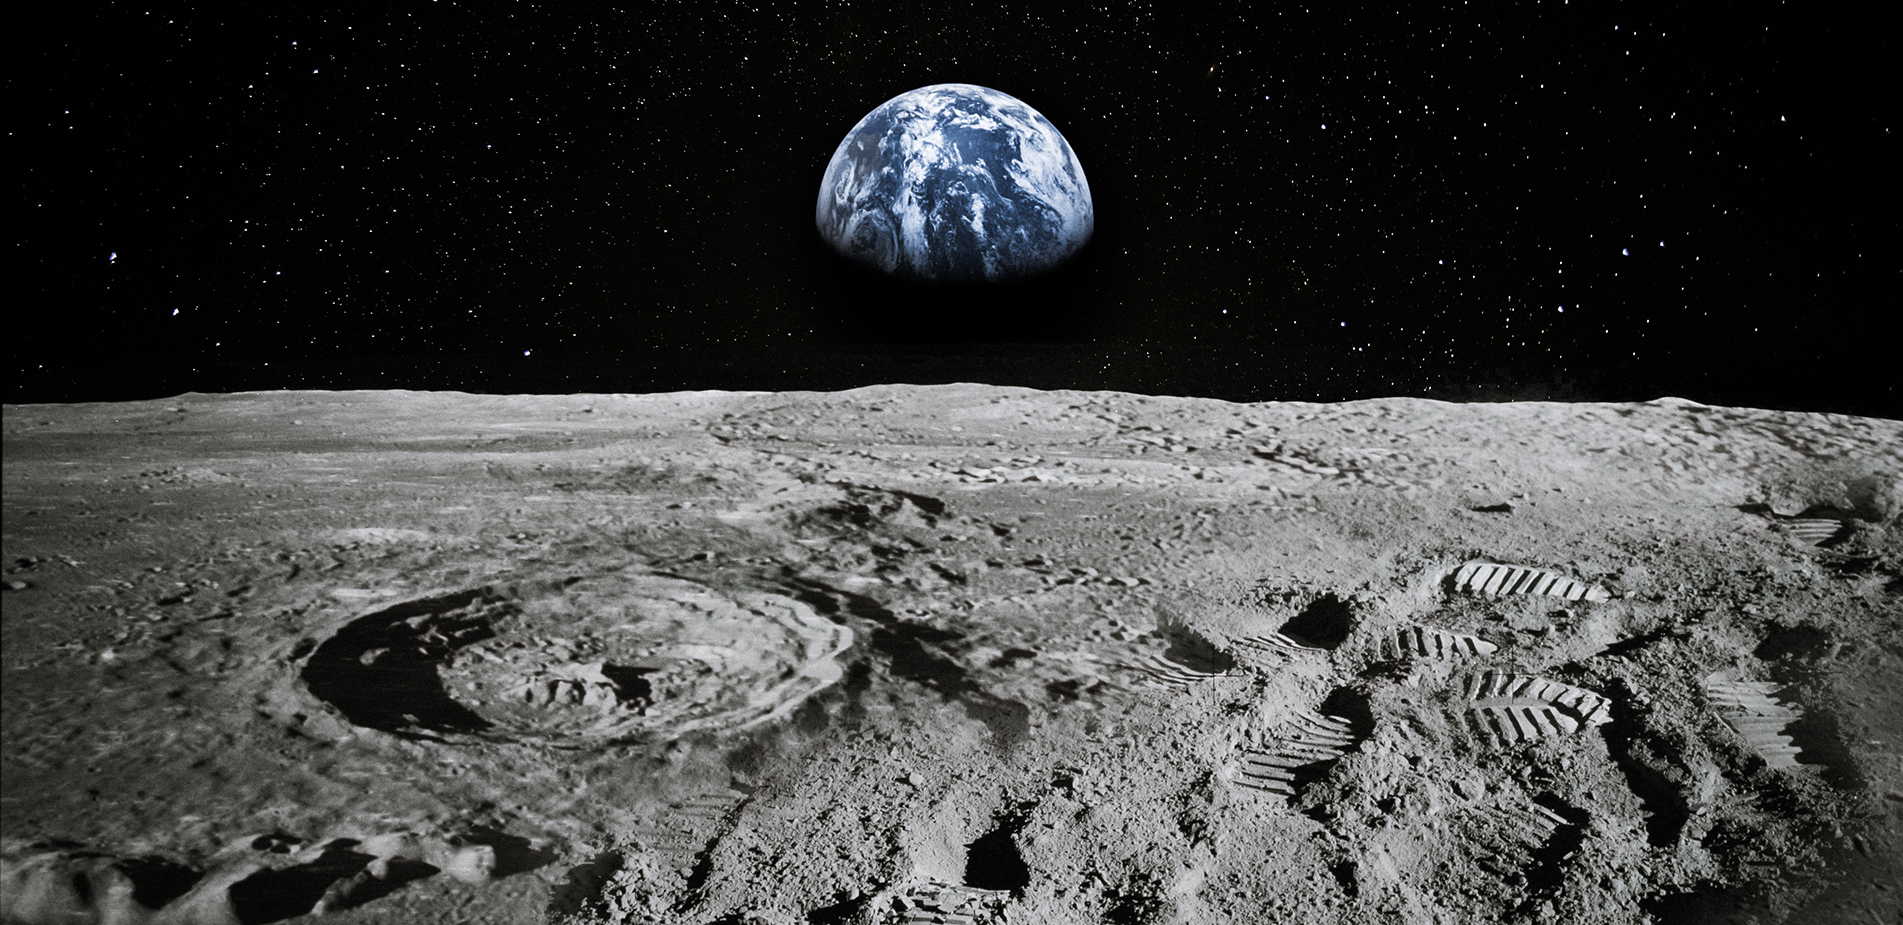 Σελήνη, το διαστημικό «Ελ Ντοράντο» &#8211; Μάχη για τις πρώτες αποικίες με έπαθλο το νερό και τους θησαυρούς της